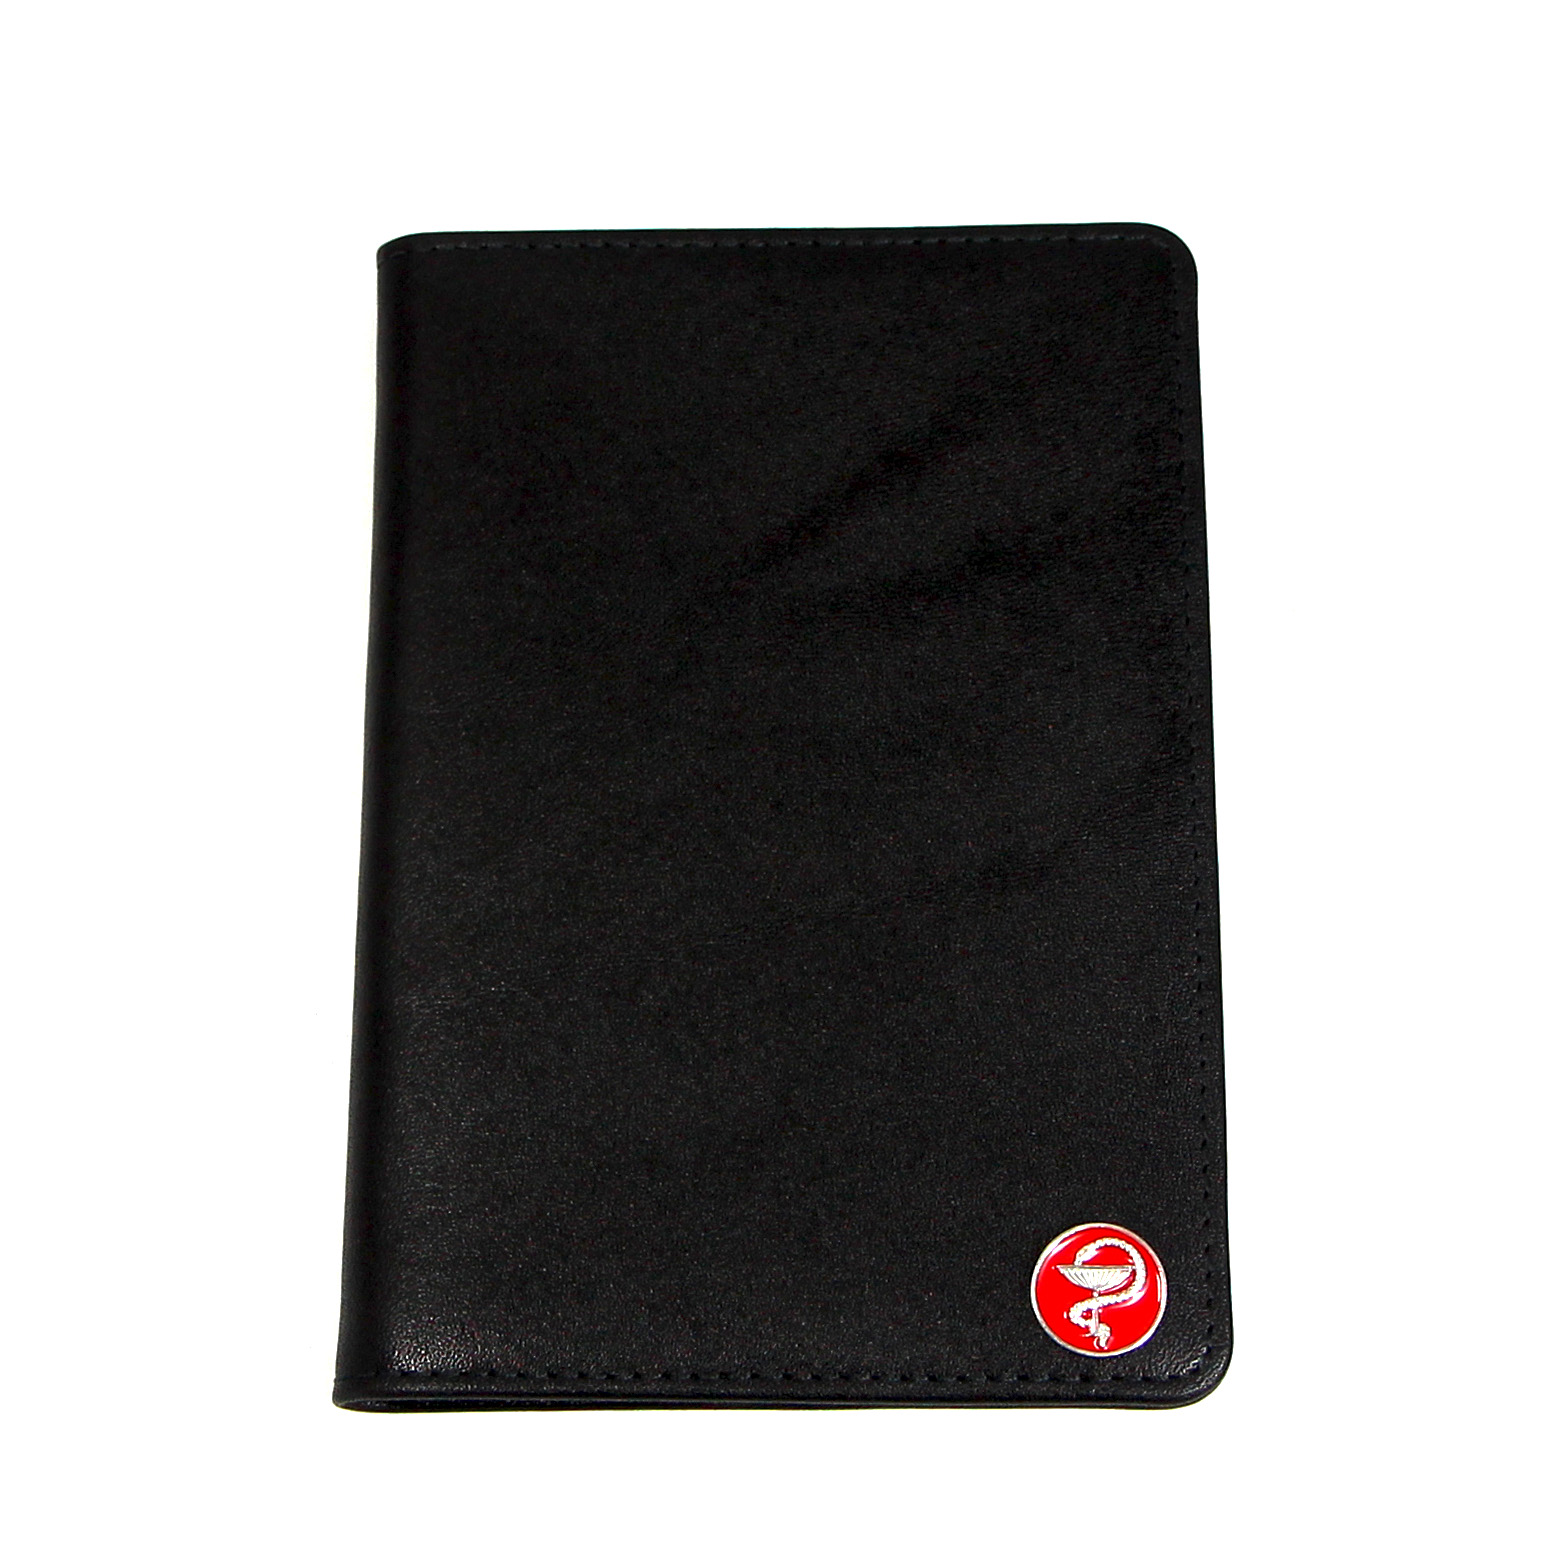 Черная кожаная обложка для паспорта для врачей SOLTAN 010 21 01 со вставкой из серебраФото 25016-01.jpg